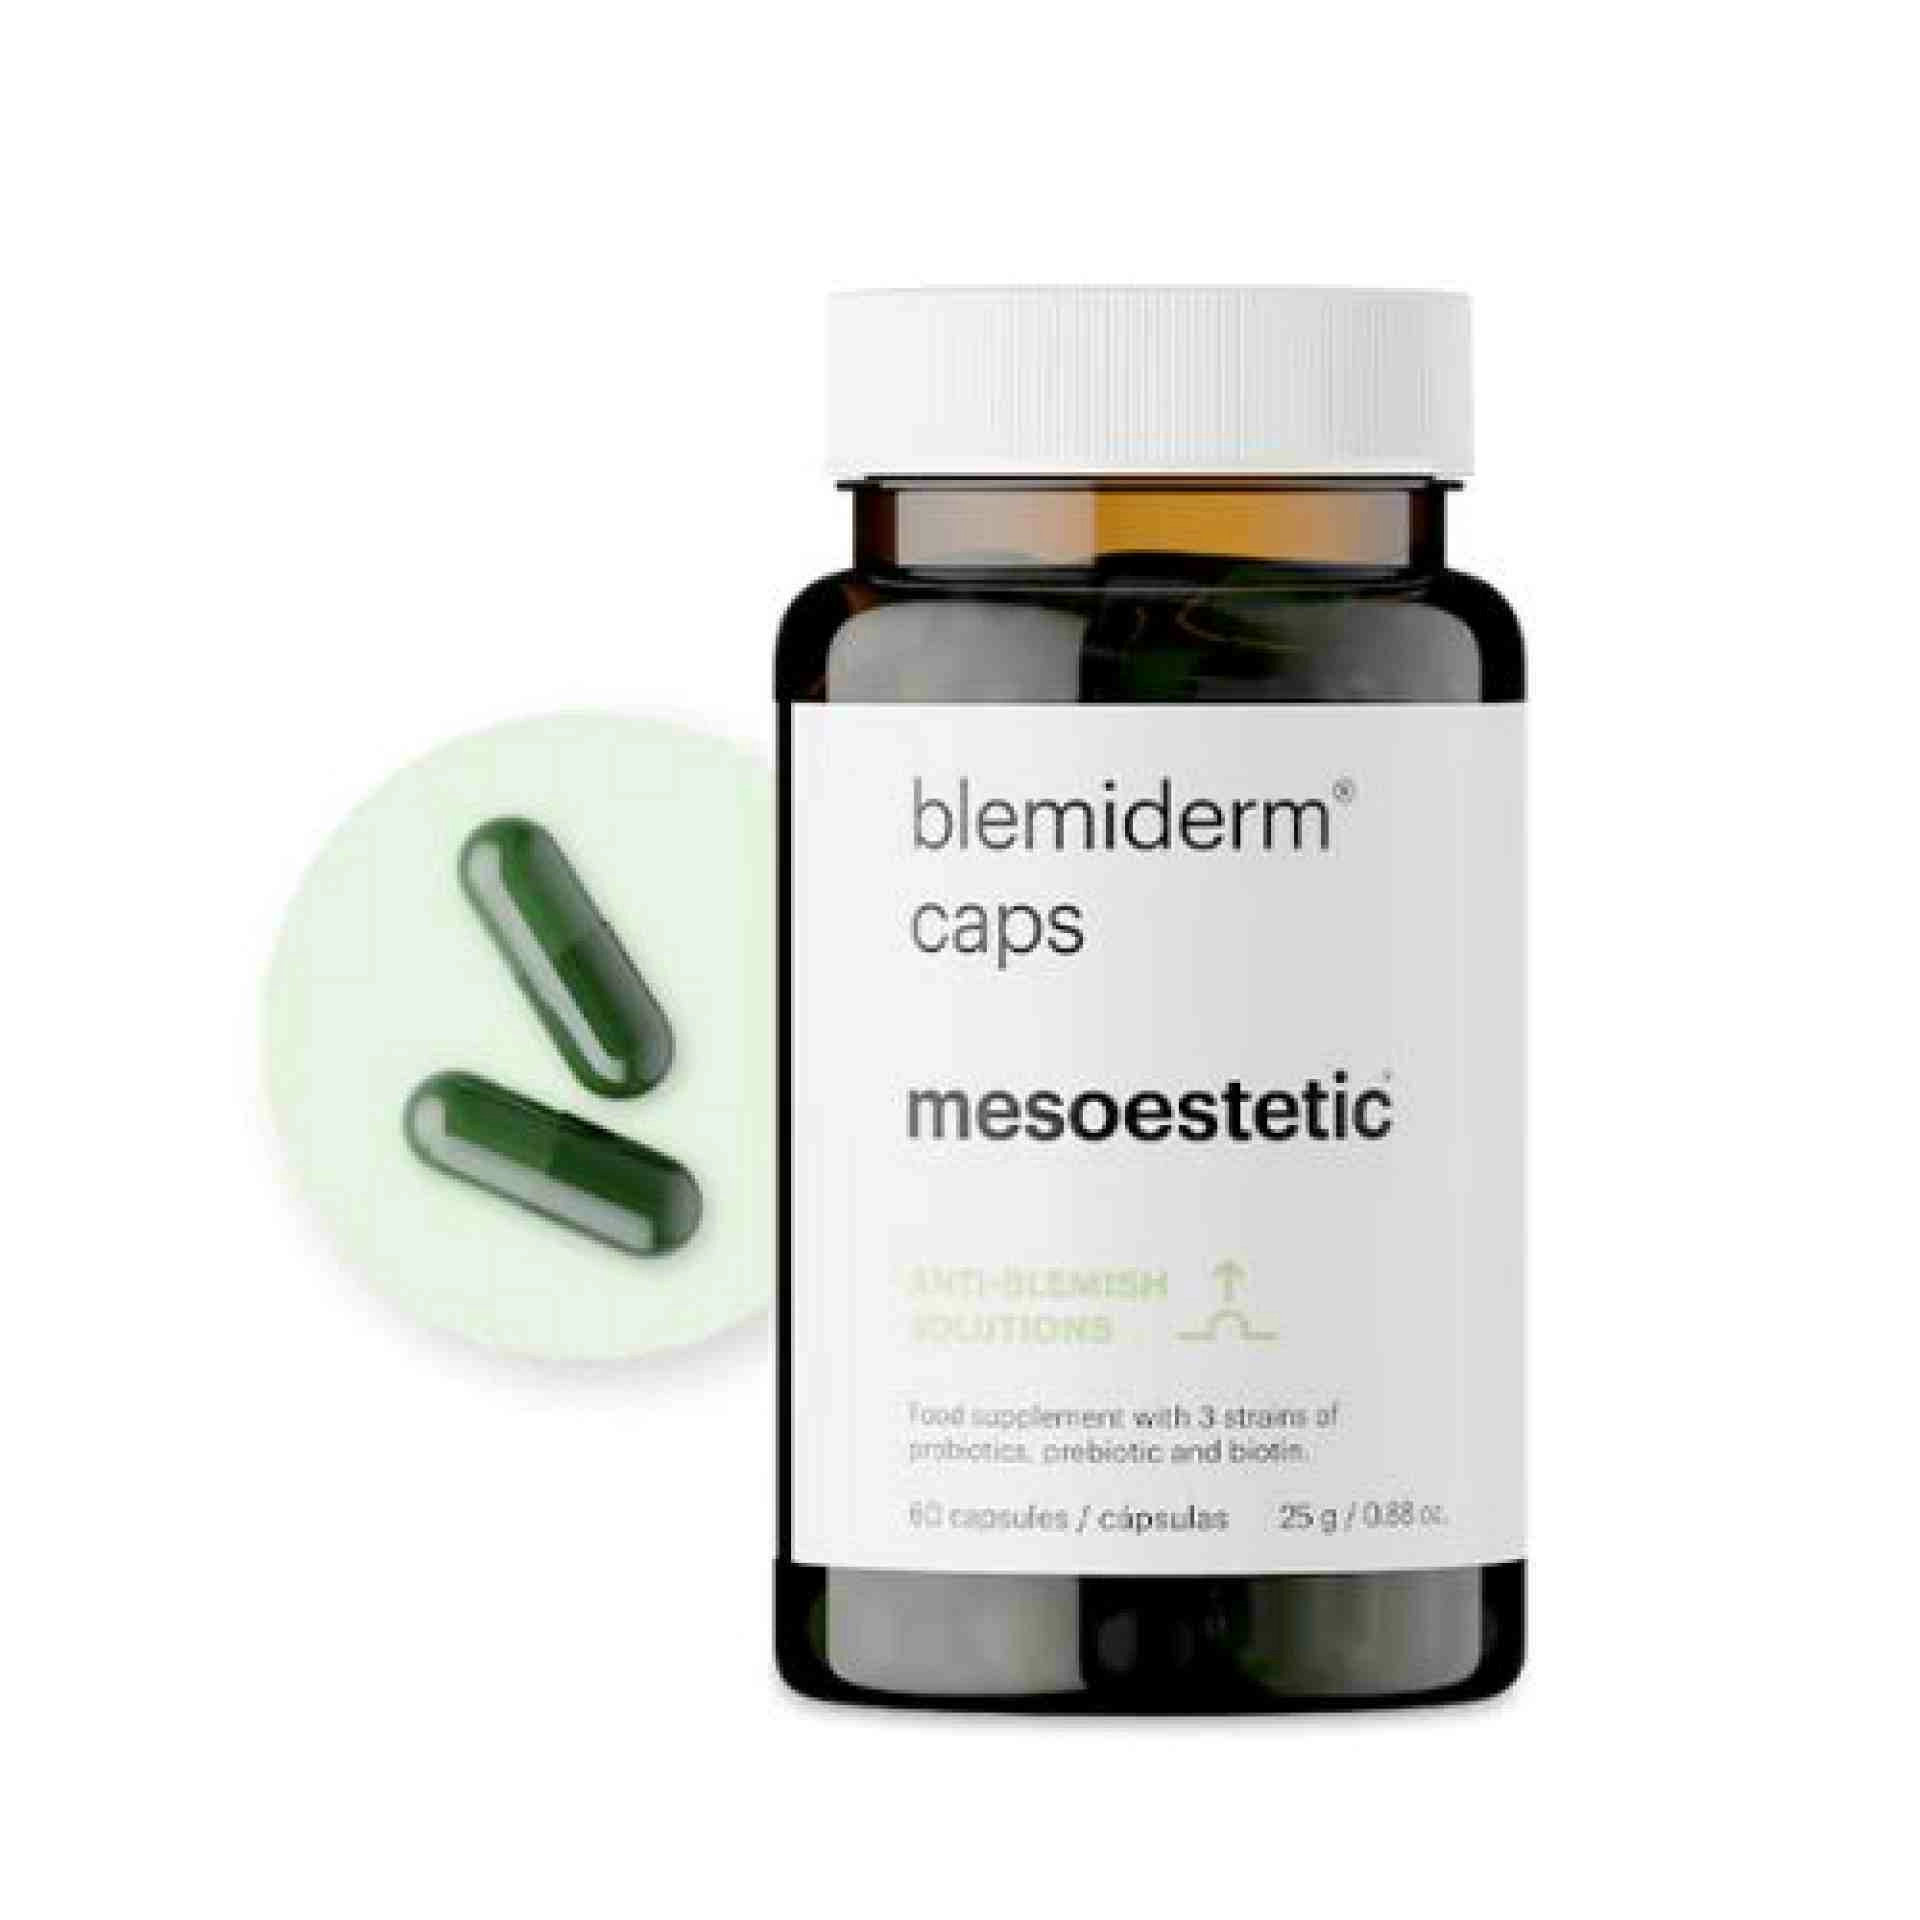 Blemiderm caps | Nutricosmética para pieles acnéicas 60 capsulas  - Anti-blemish solution - mesoestetic ®